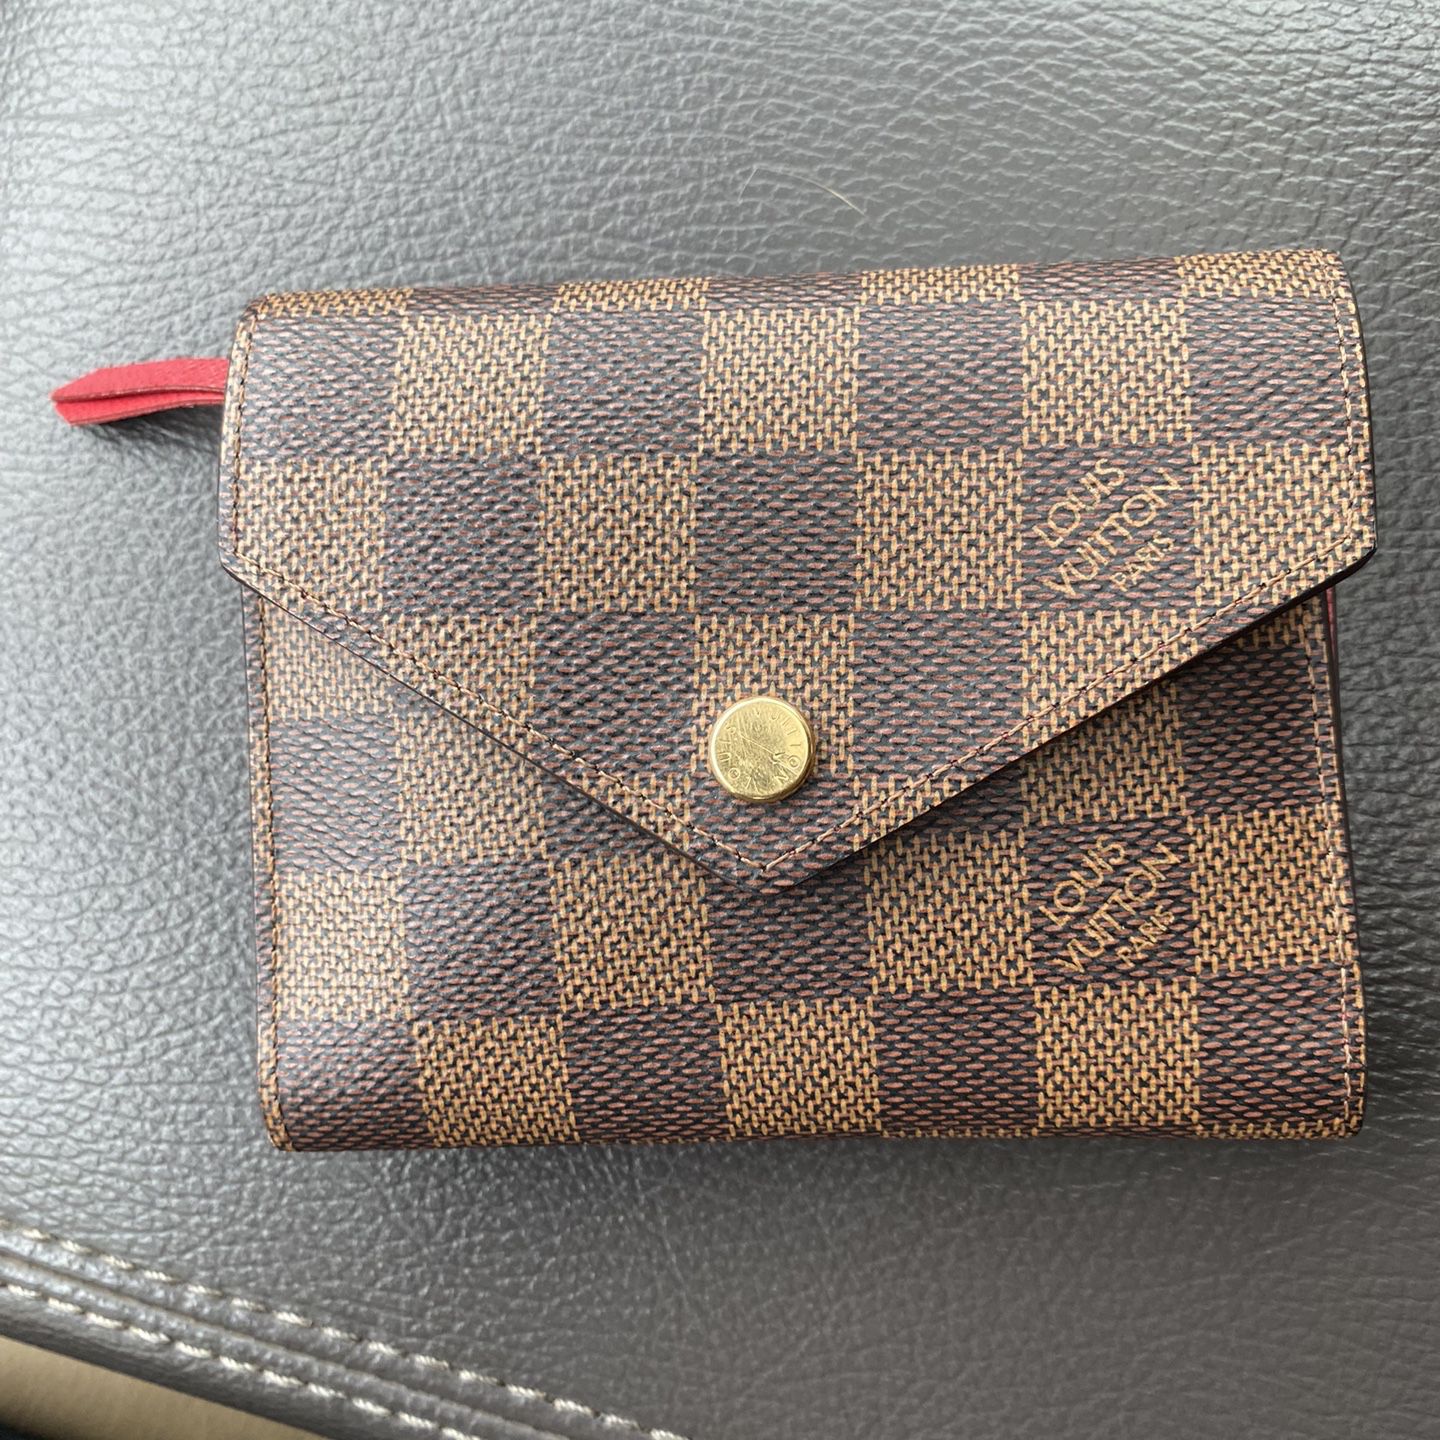 Authentic Louis Vuitton Men's Wallet for Sale in Lafayette, LA